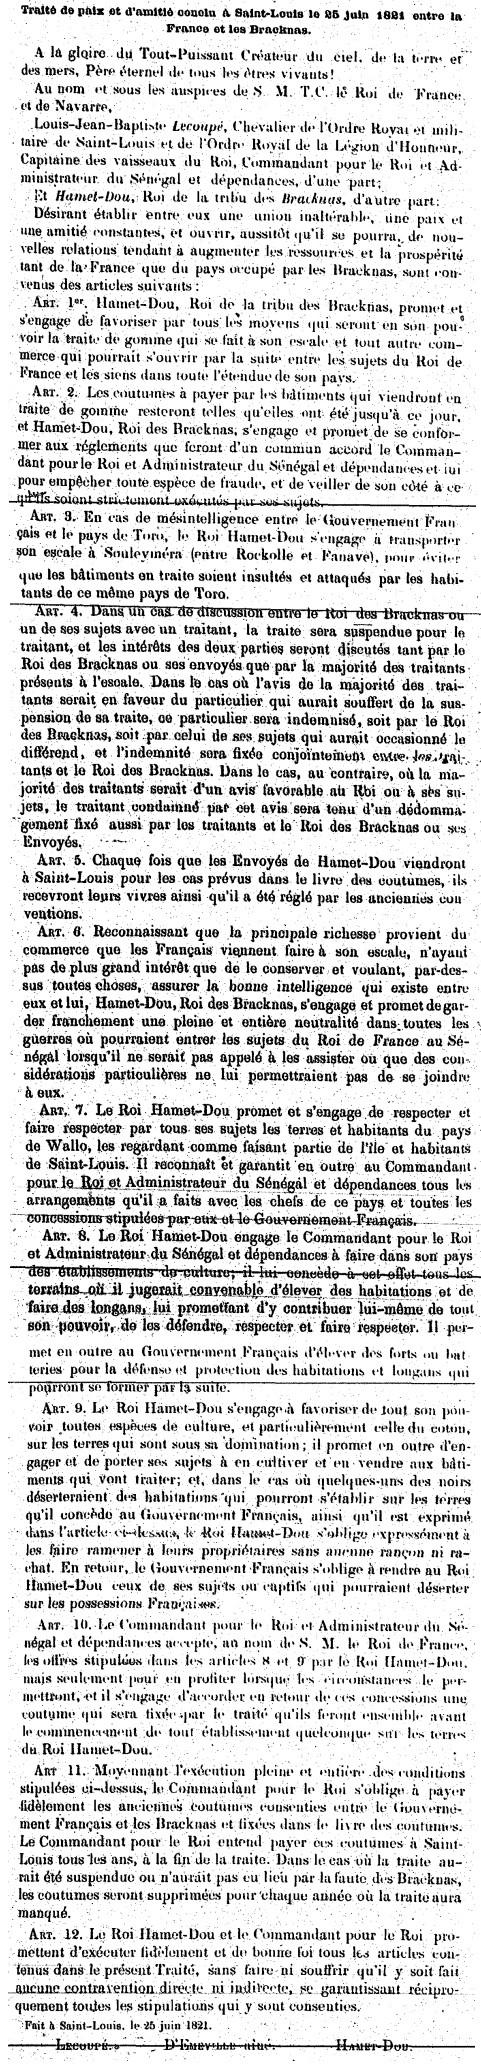 Traité de paix et d'amitié conclu à Saint-Louis le 25 juin 1821 entre la France et les Braknas